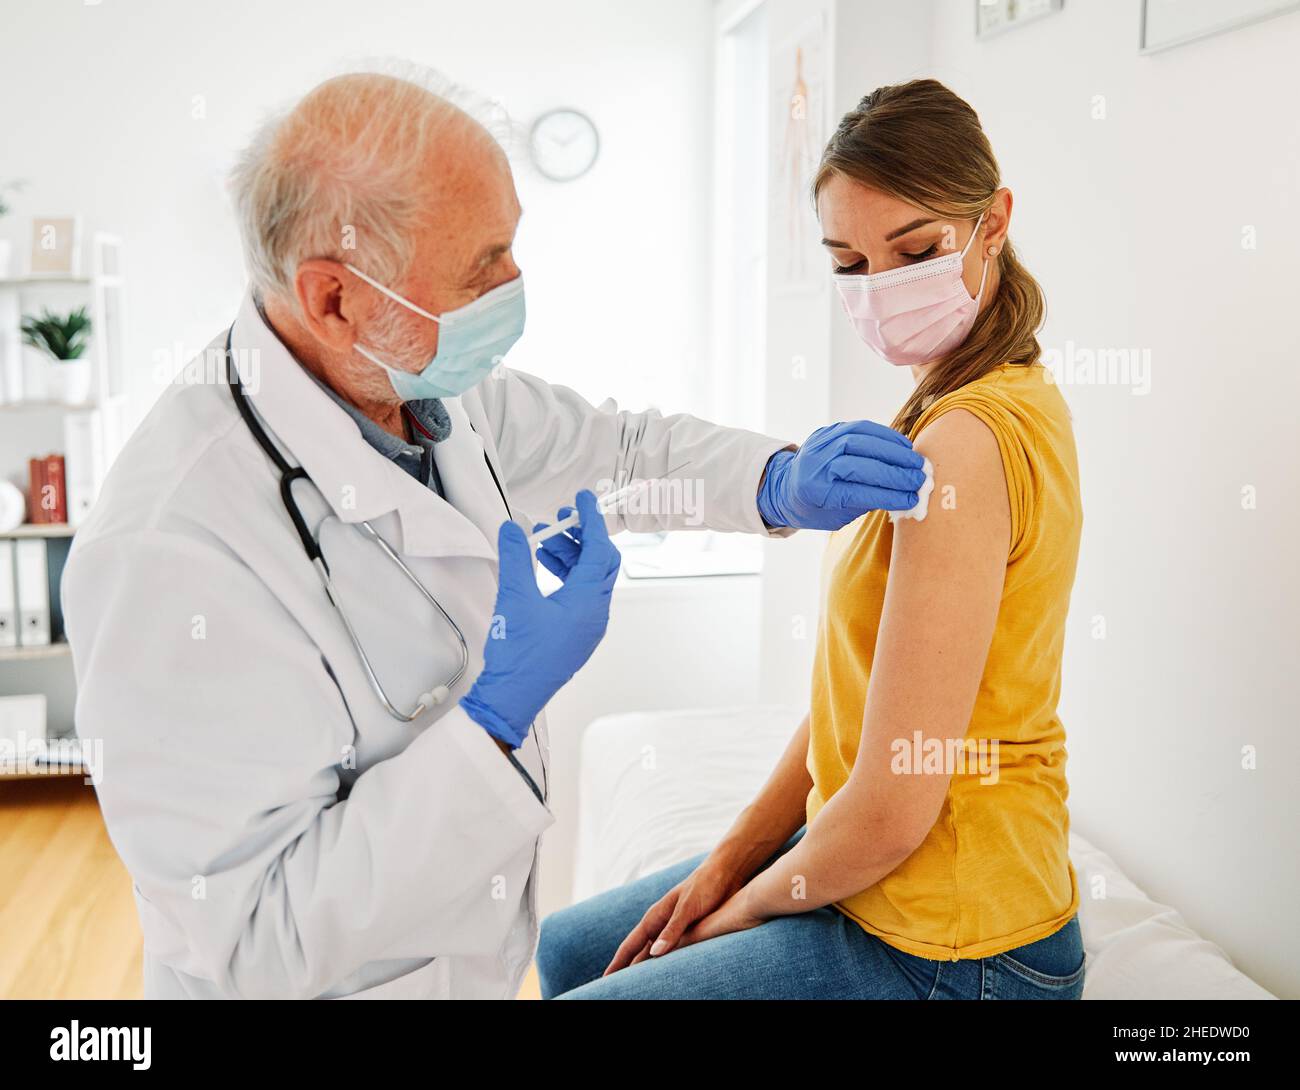 vaccin médicament seringue vaccin médecin injection médical santé virus hôpital soins patient grippe masque coronavirus corona senior Banque D'Images